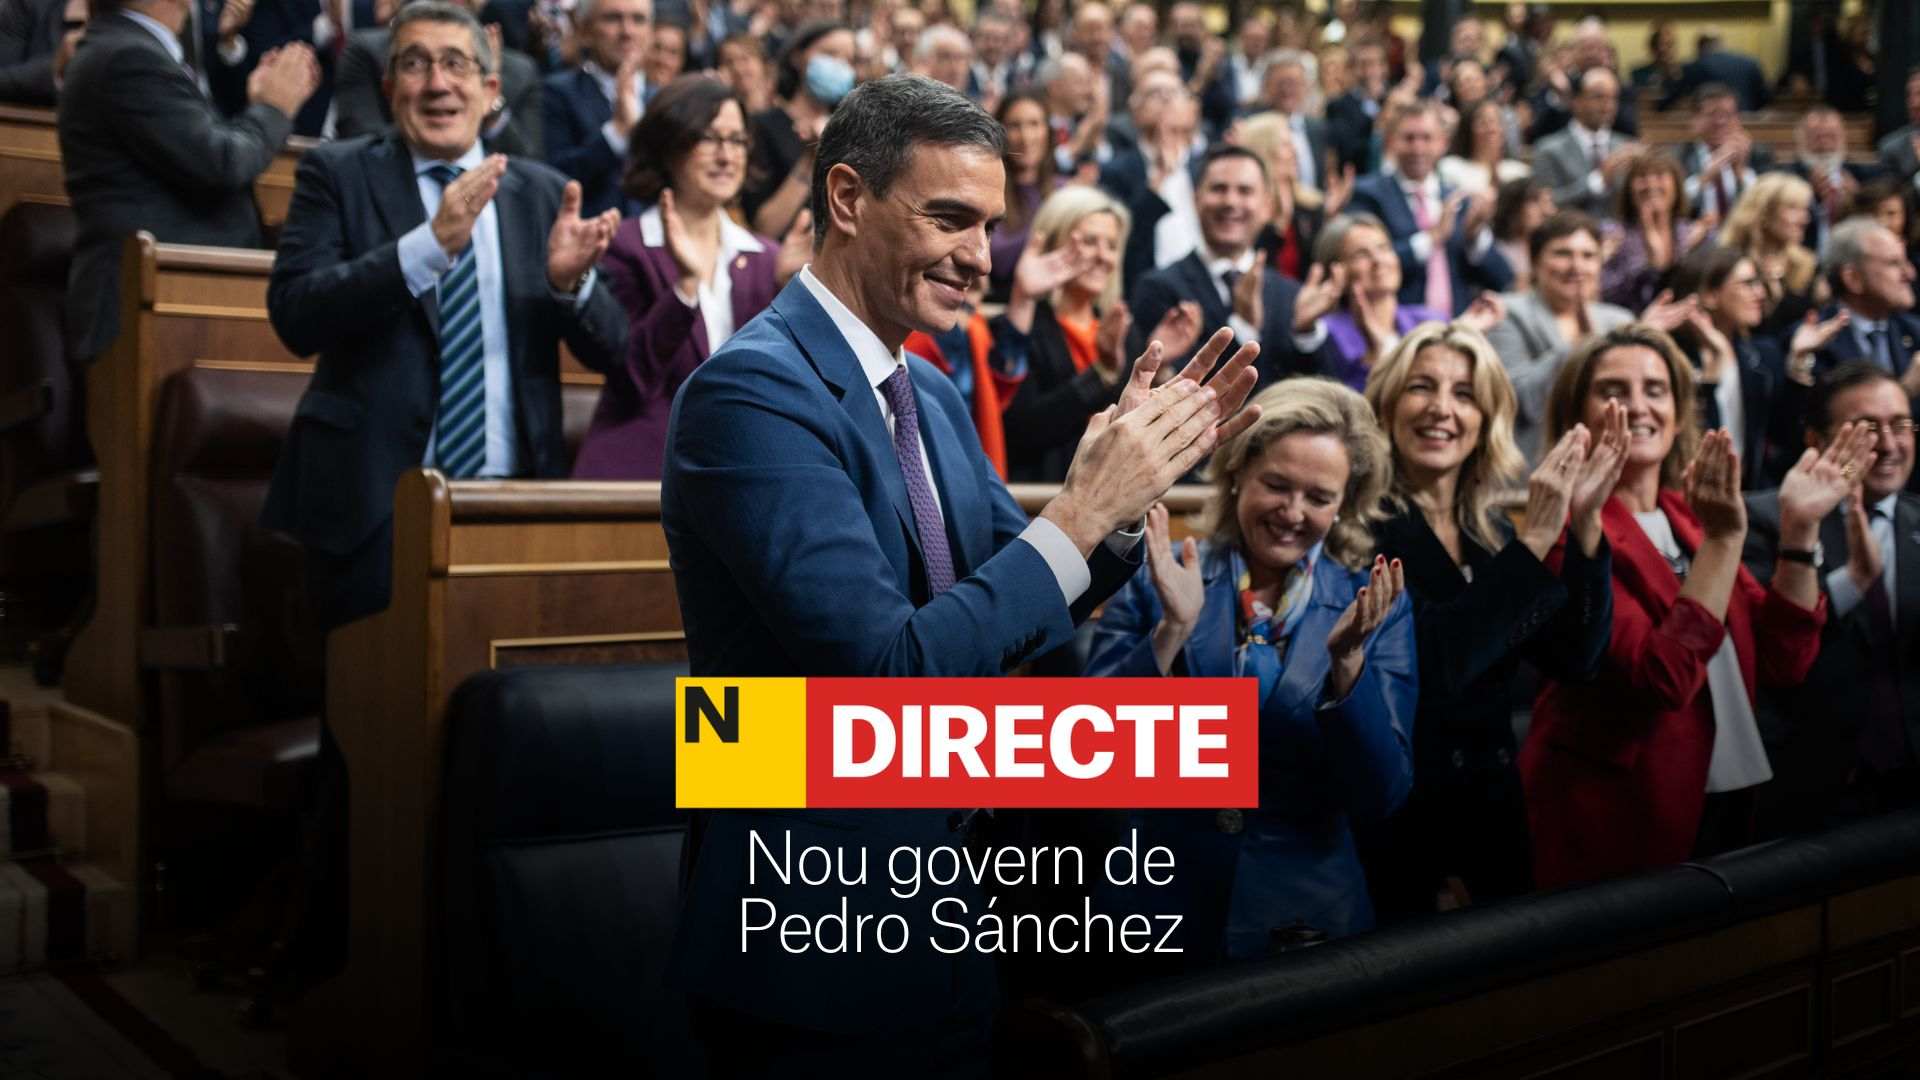 Nuevo gobierno de Pedro Sánchez, DIRECTO | Presentación de los nuevos ministros, última hora